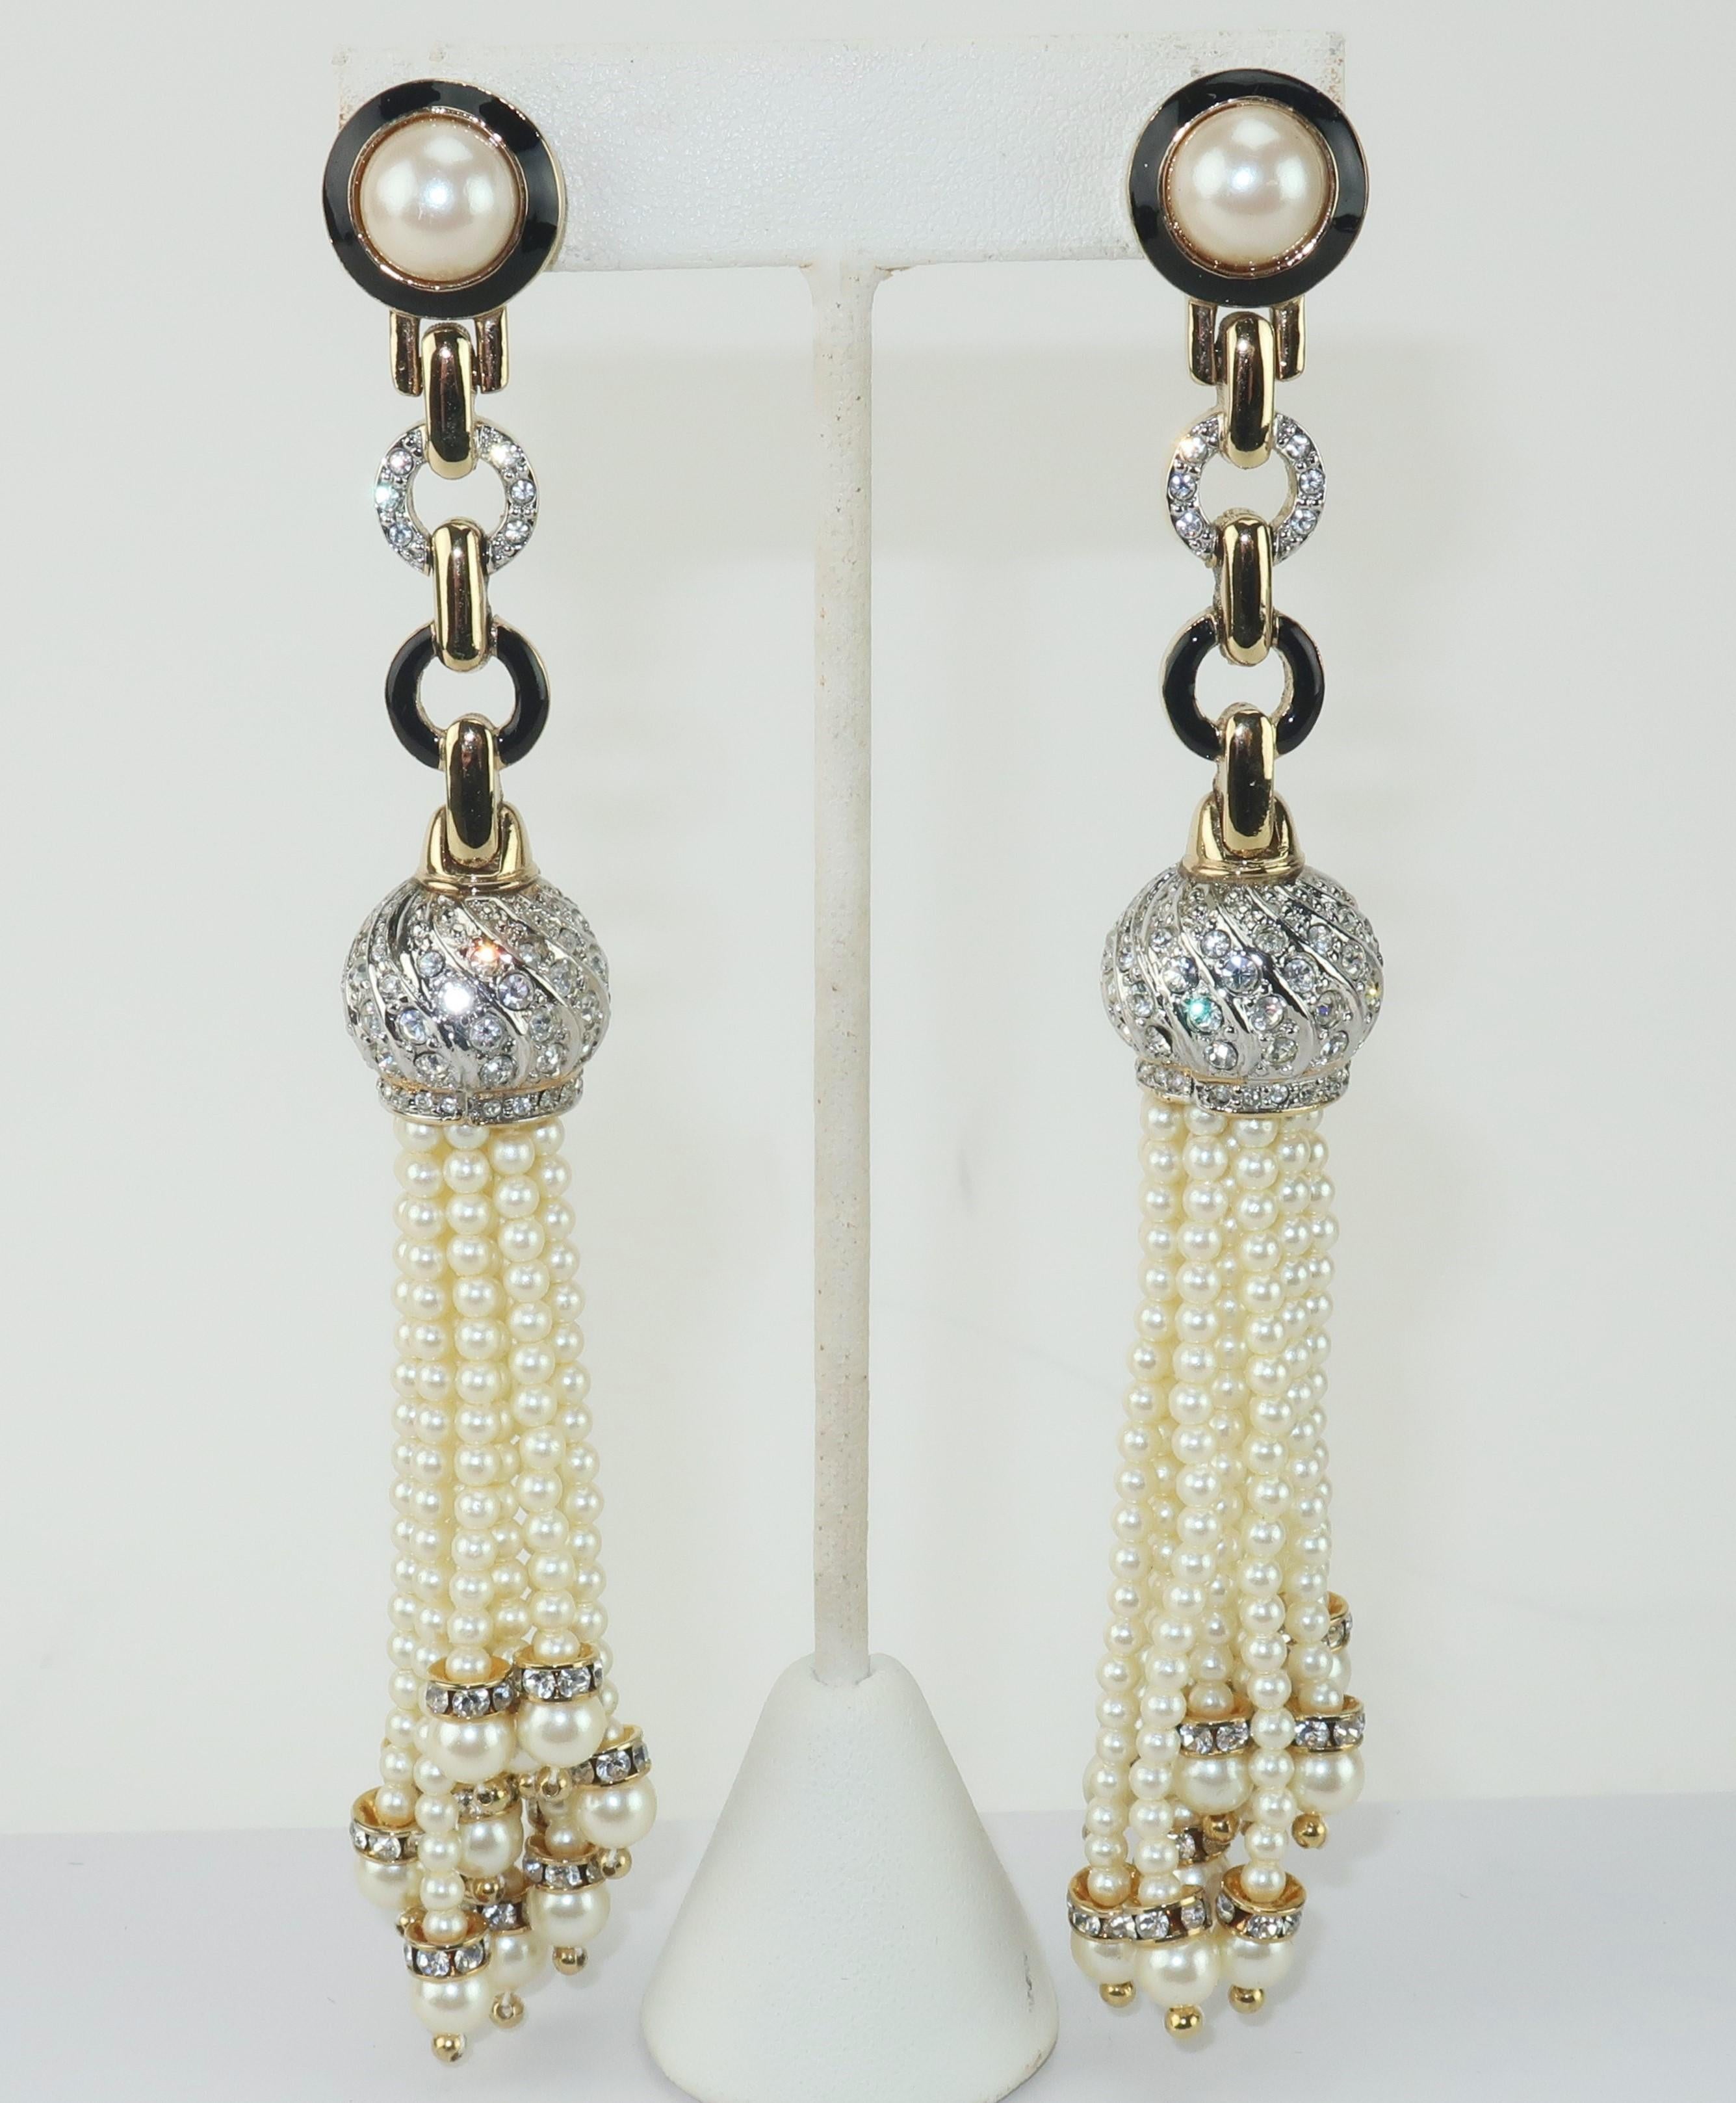 Vintage Carolee faux Perle, Strass und schwarze Emaille Quaste Ohrringe mit Clip auf Hardware.  Die übertriebene Länge und die artikulierte Bewegung der Ohrringe sind ein auffälliges Statement.  Signiert auf der Rückseite des Sockels.
CONDIT
In sehr